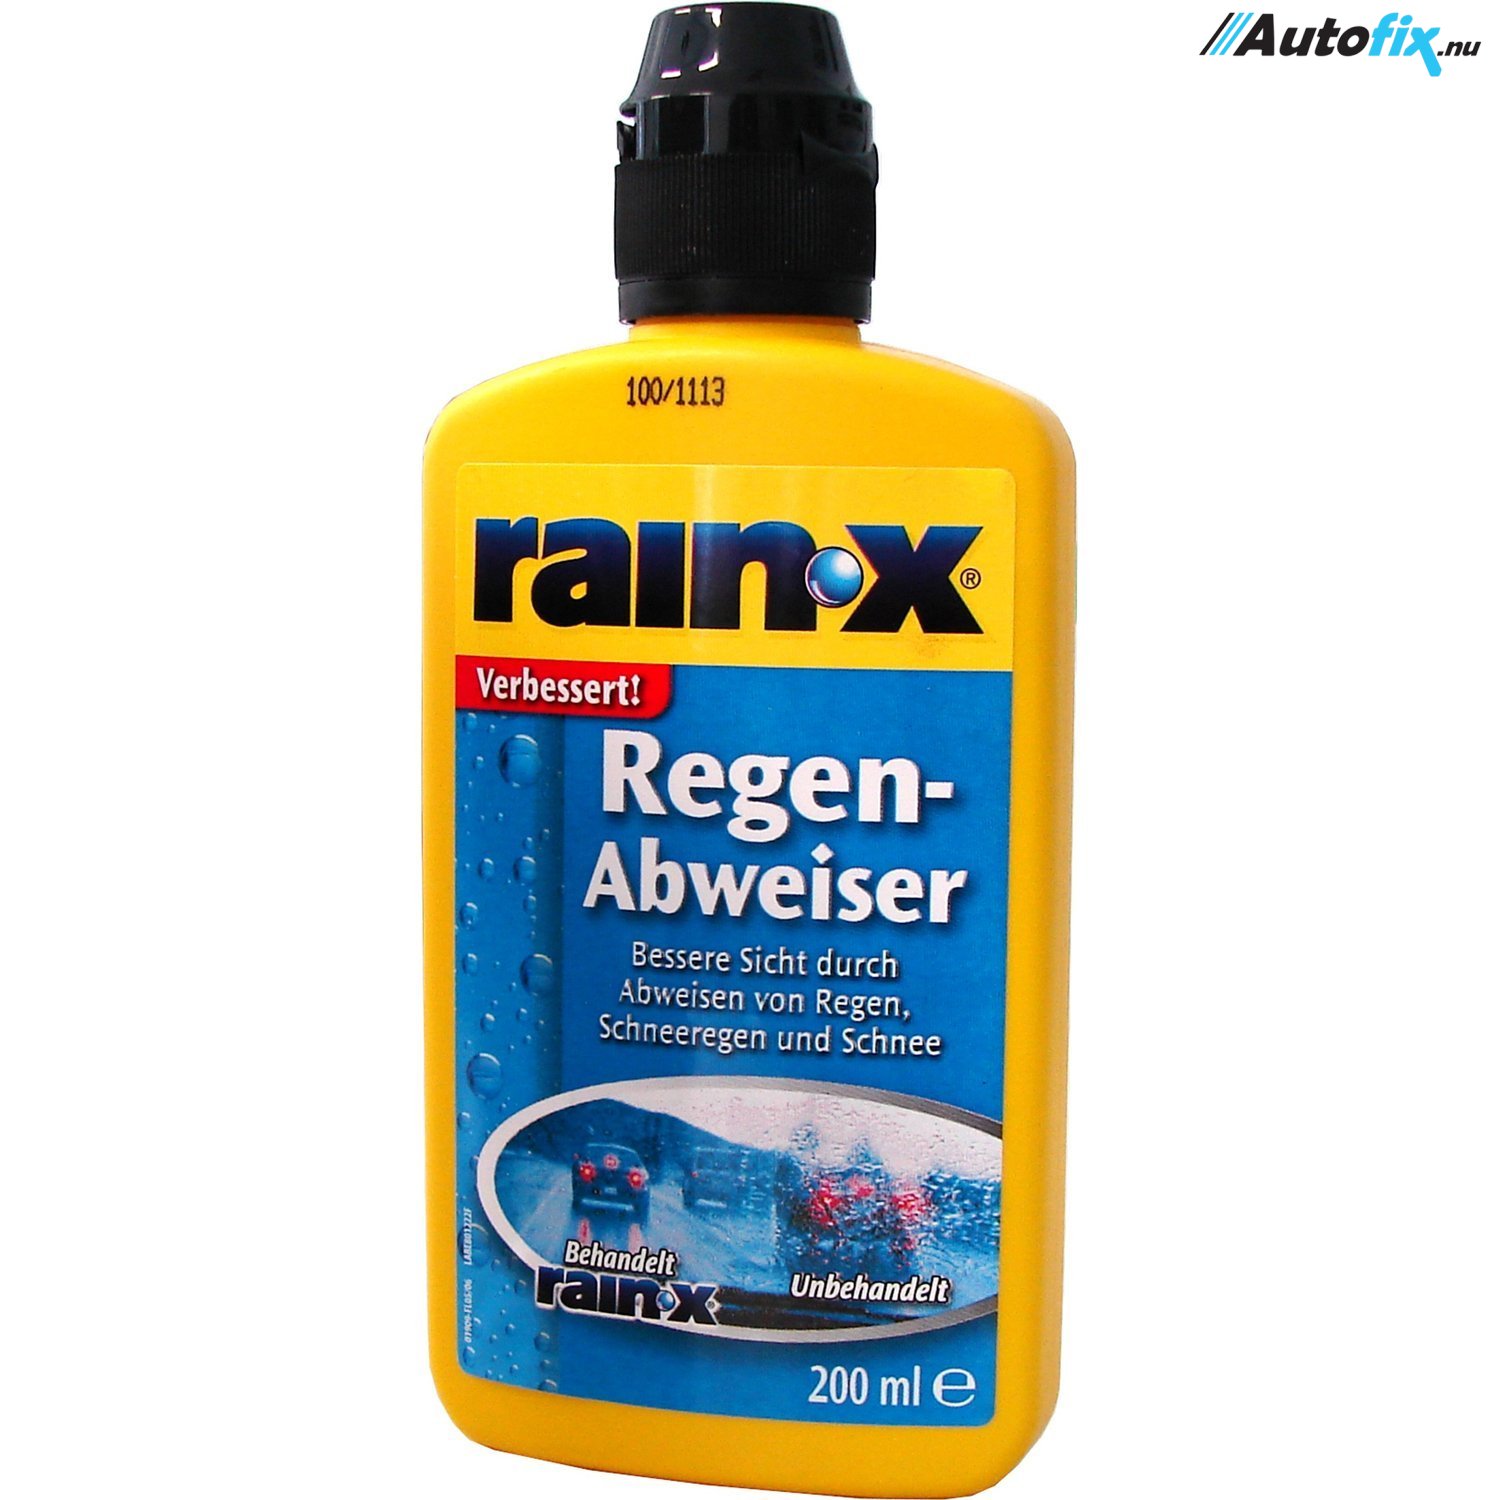 RAIN X Regenabweiser 200ML -  Onlineshop